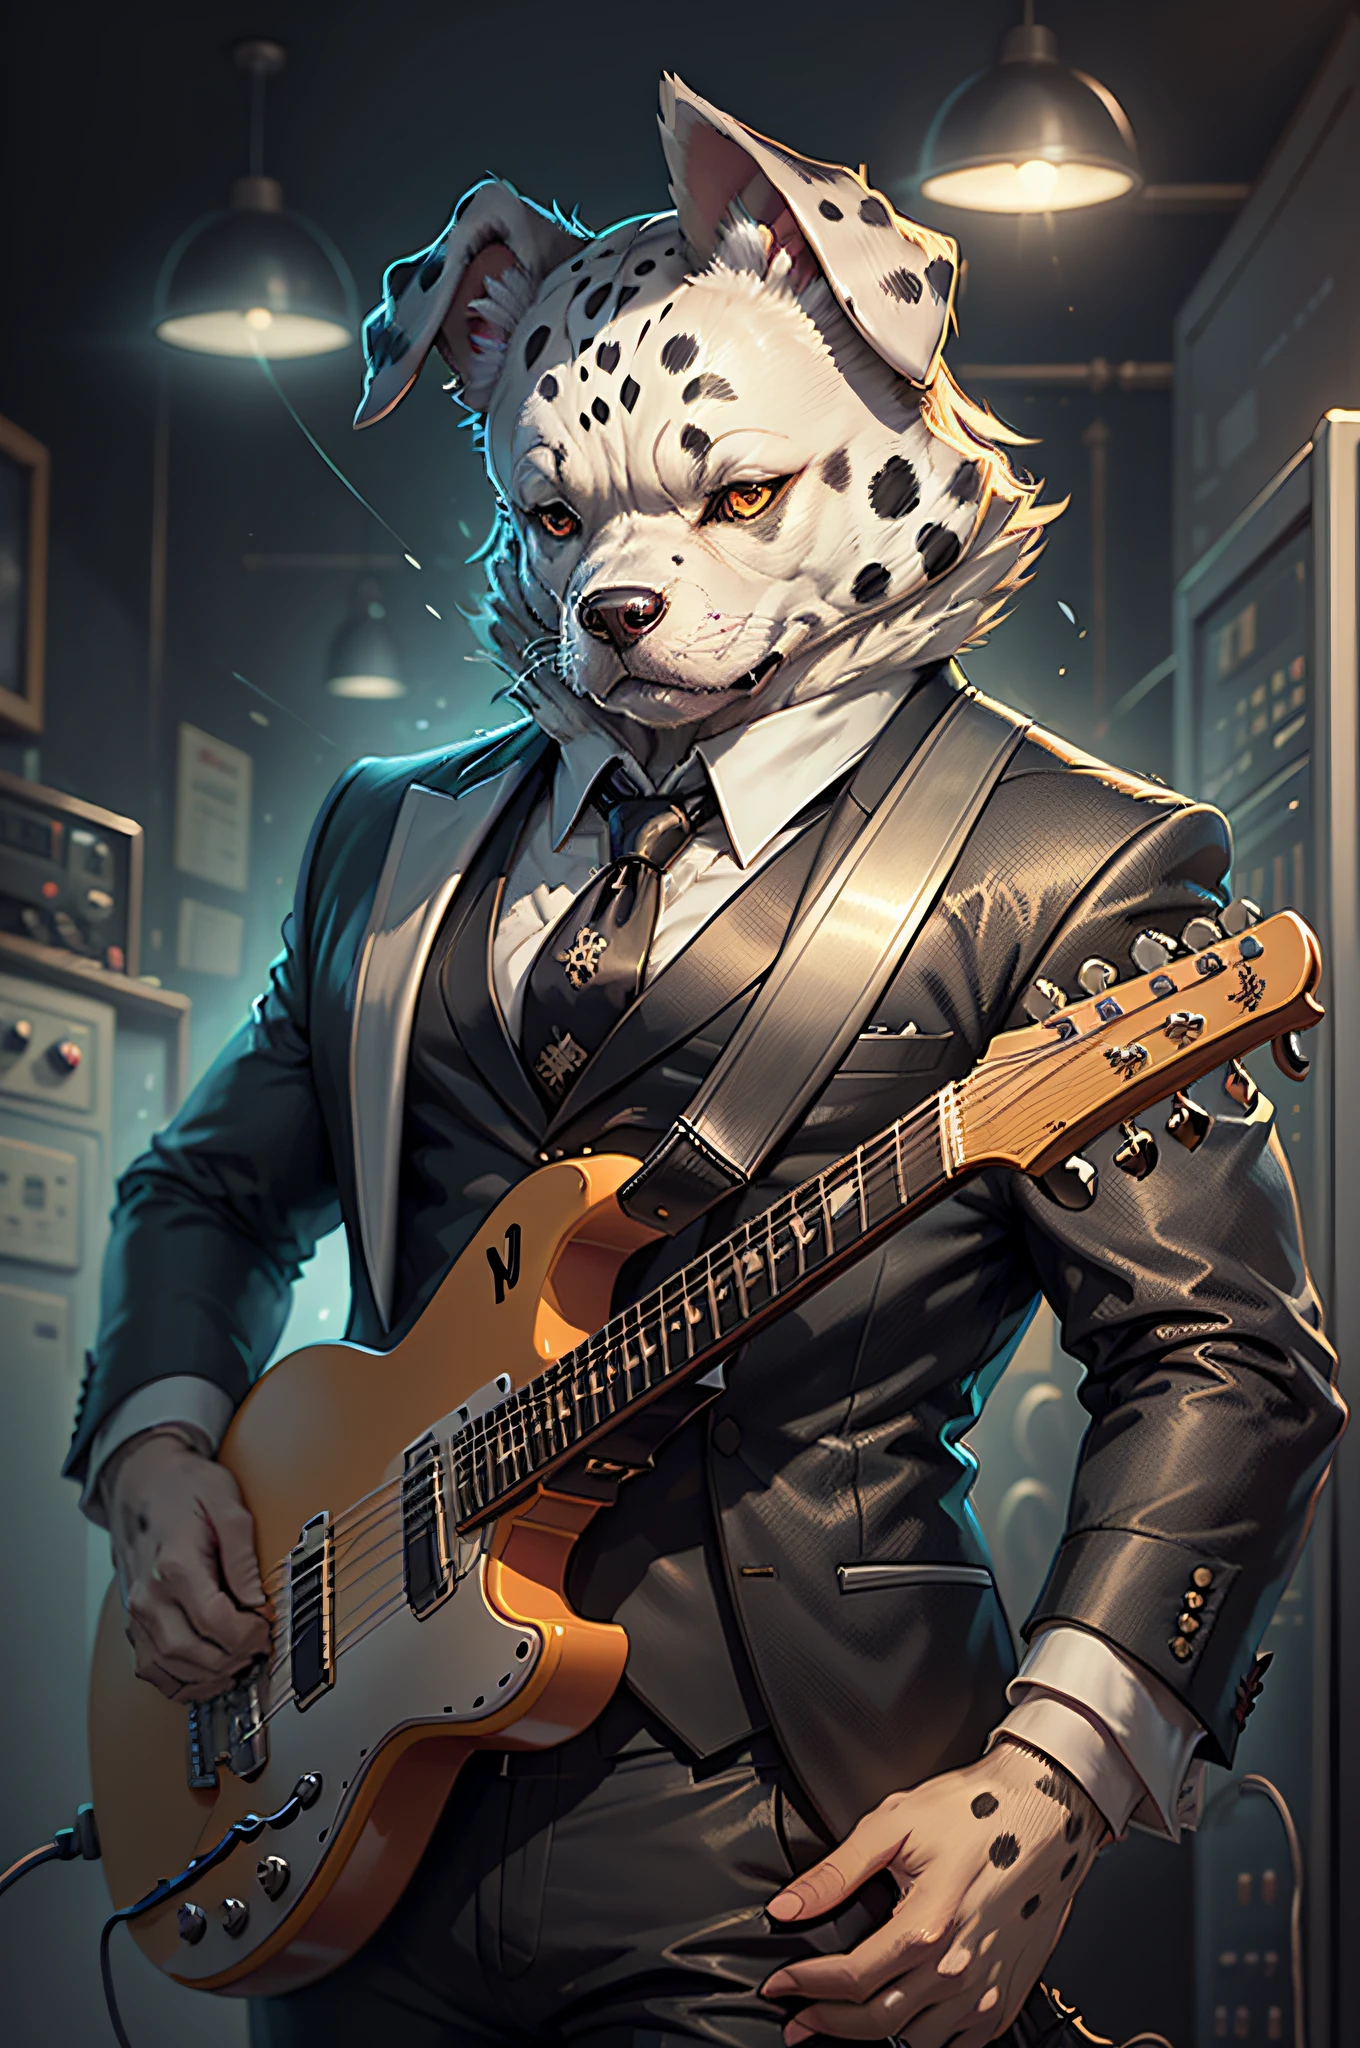 (رجل يرتدي بدلة سوداء وربطة عنق)كرتون يعزف على الجيتار الكهربائي、كلب دلماسي ذو أذنين مجسمة